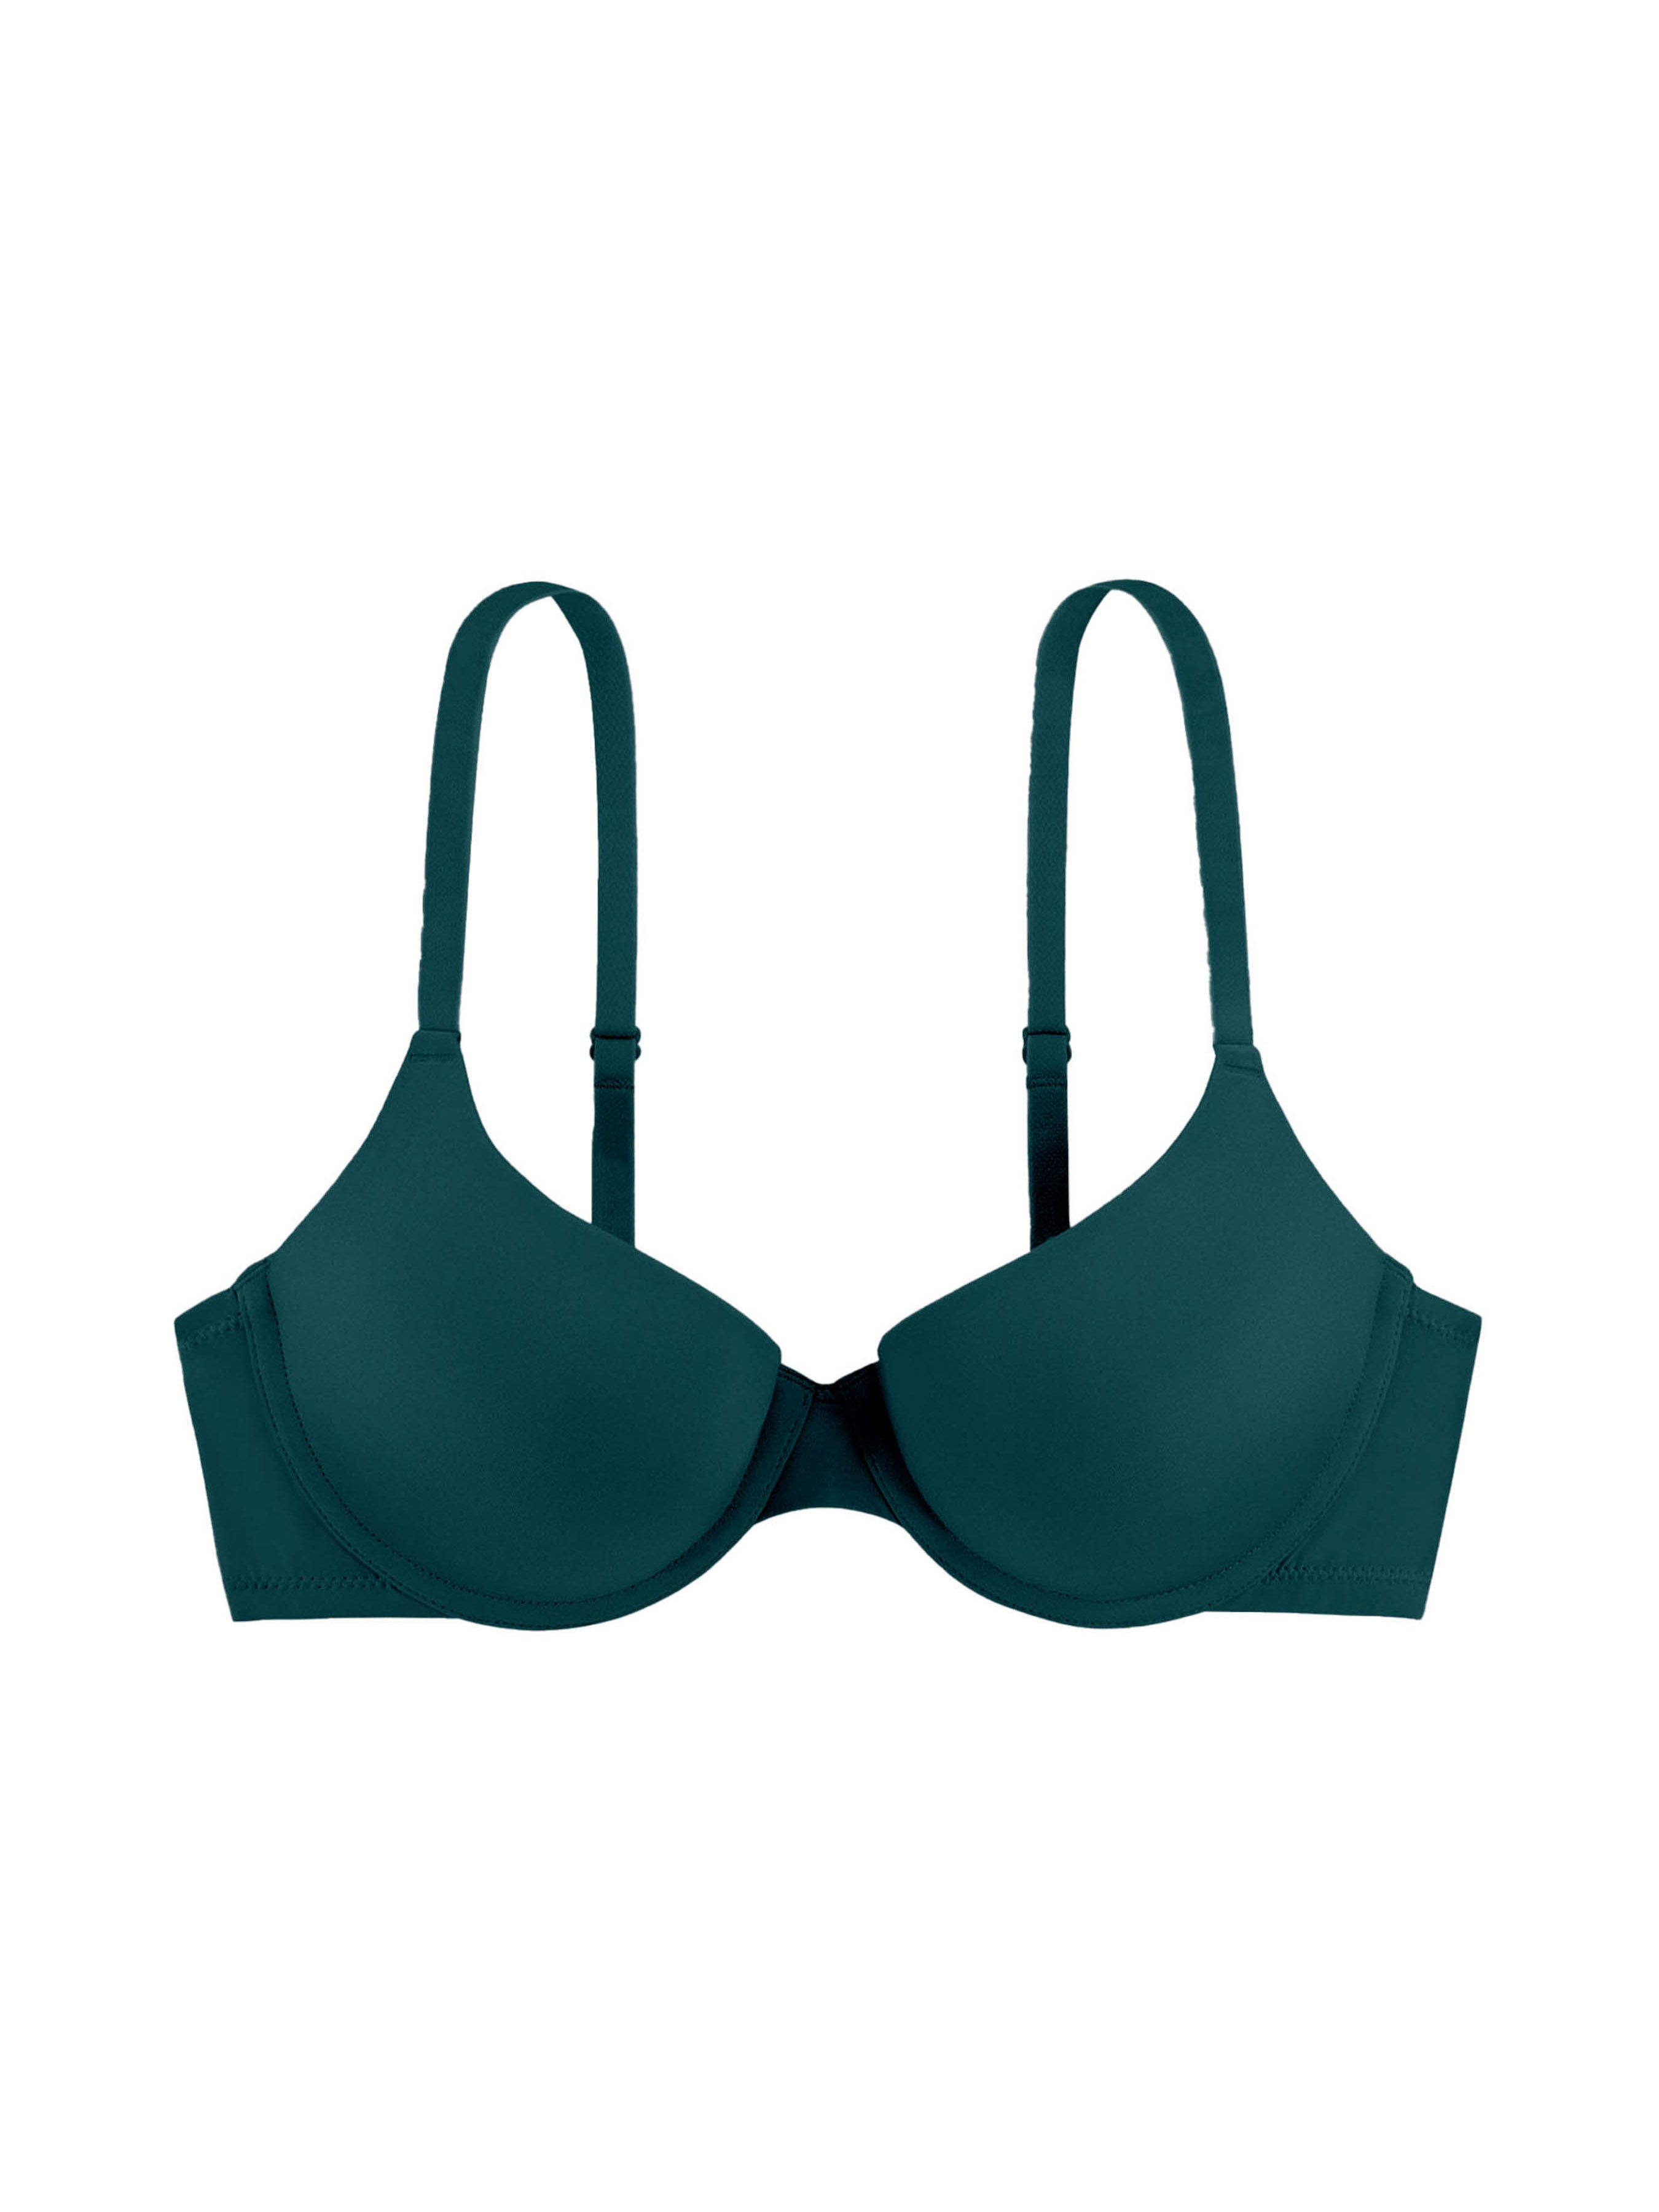 Push-up bra made of premium microfiber - Diane – Diane & Geordi US